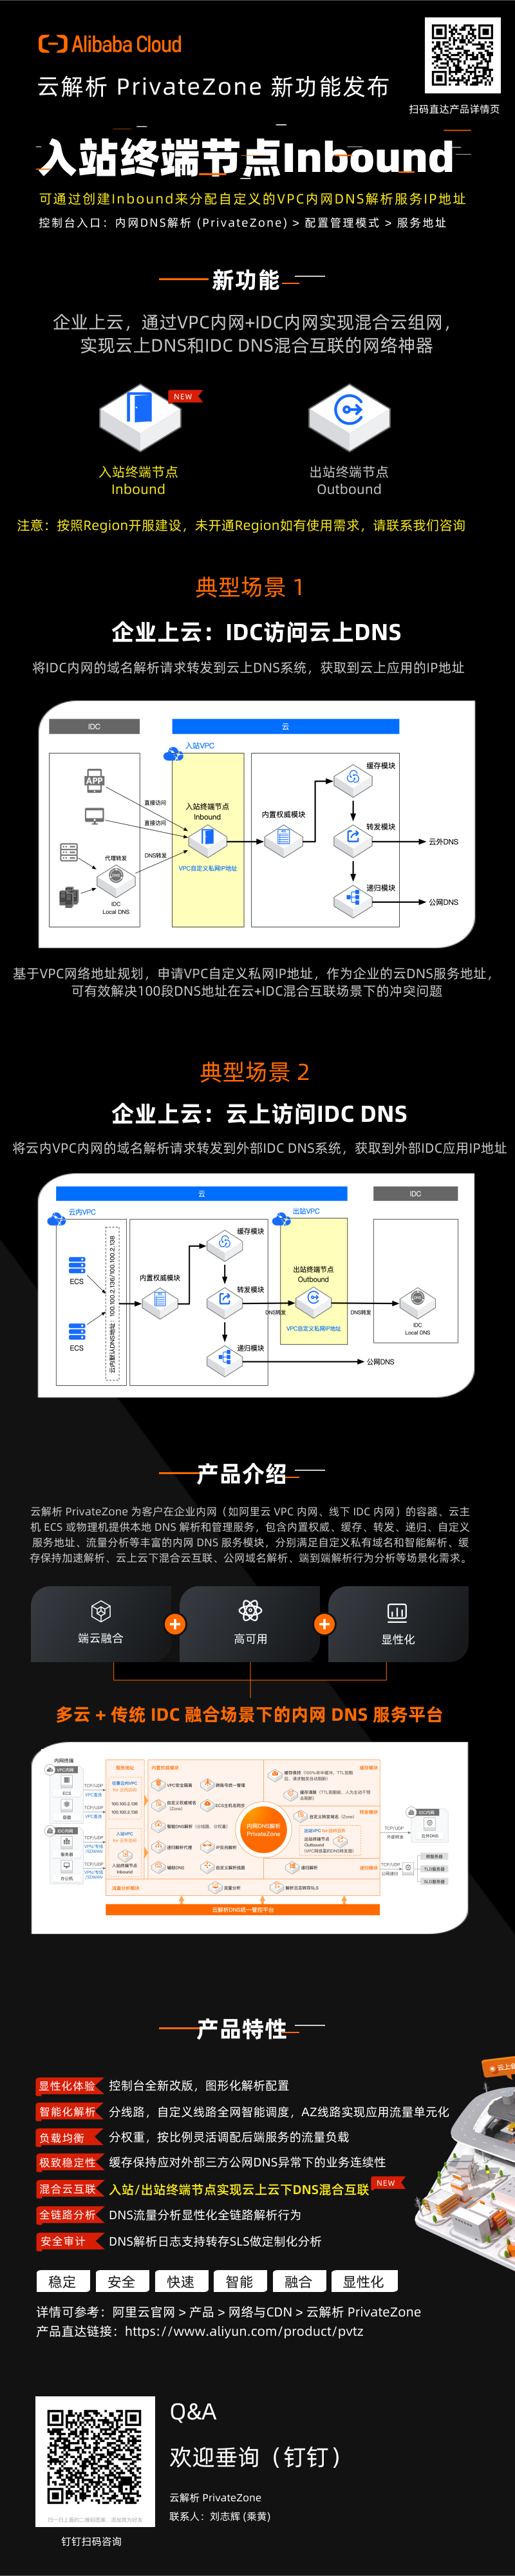 云解析PrivateZone 入站终端节点Inbound发布 - 中文版.png